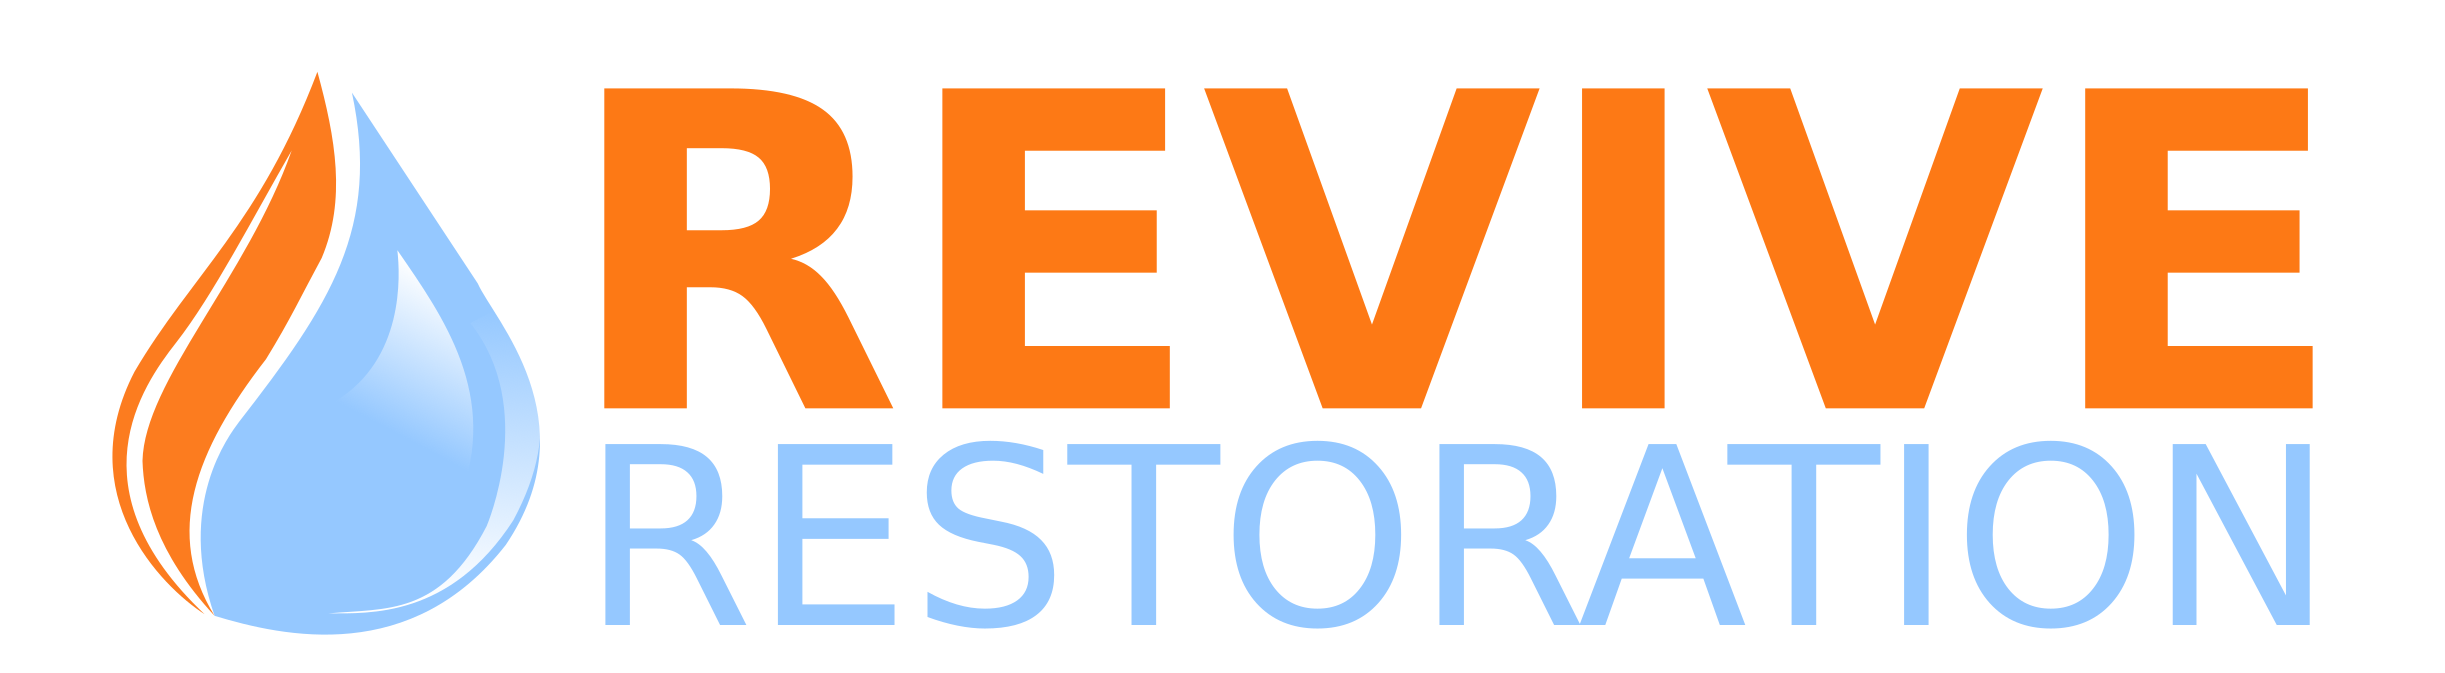 revive restoration banner logo